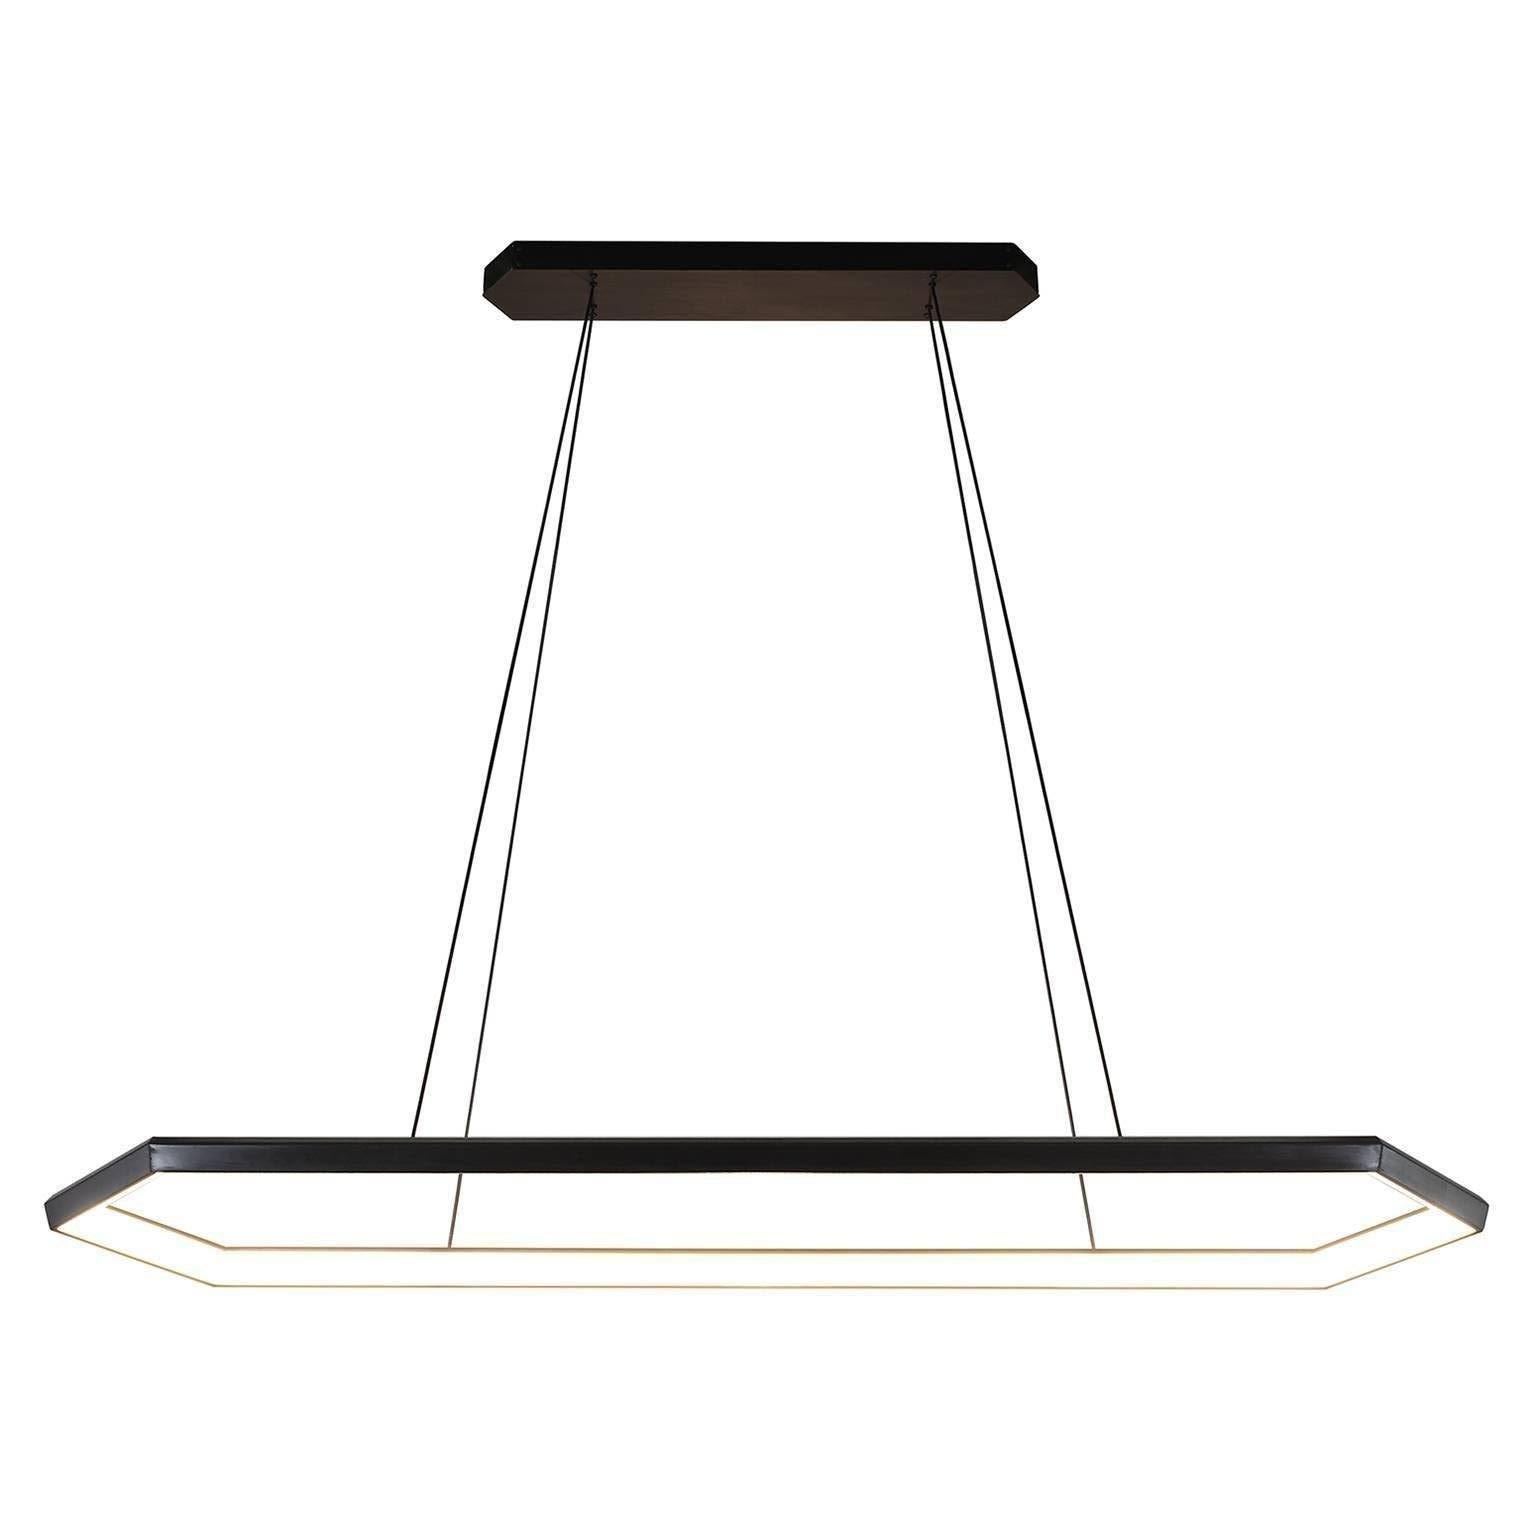 Kruos LX58 a une forme hexagonale allongée qui offre un large faisceau de lumière, parfait pour éclairer adroitement les espaces de travail, les cuisines et les bureaux.

Finition en métal
Finition par revêtement en poudre disponible en laiton